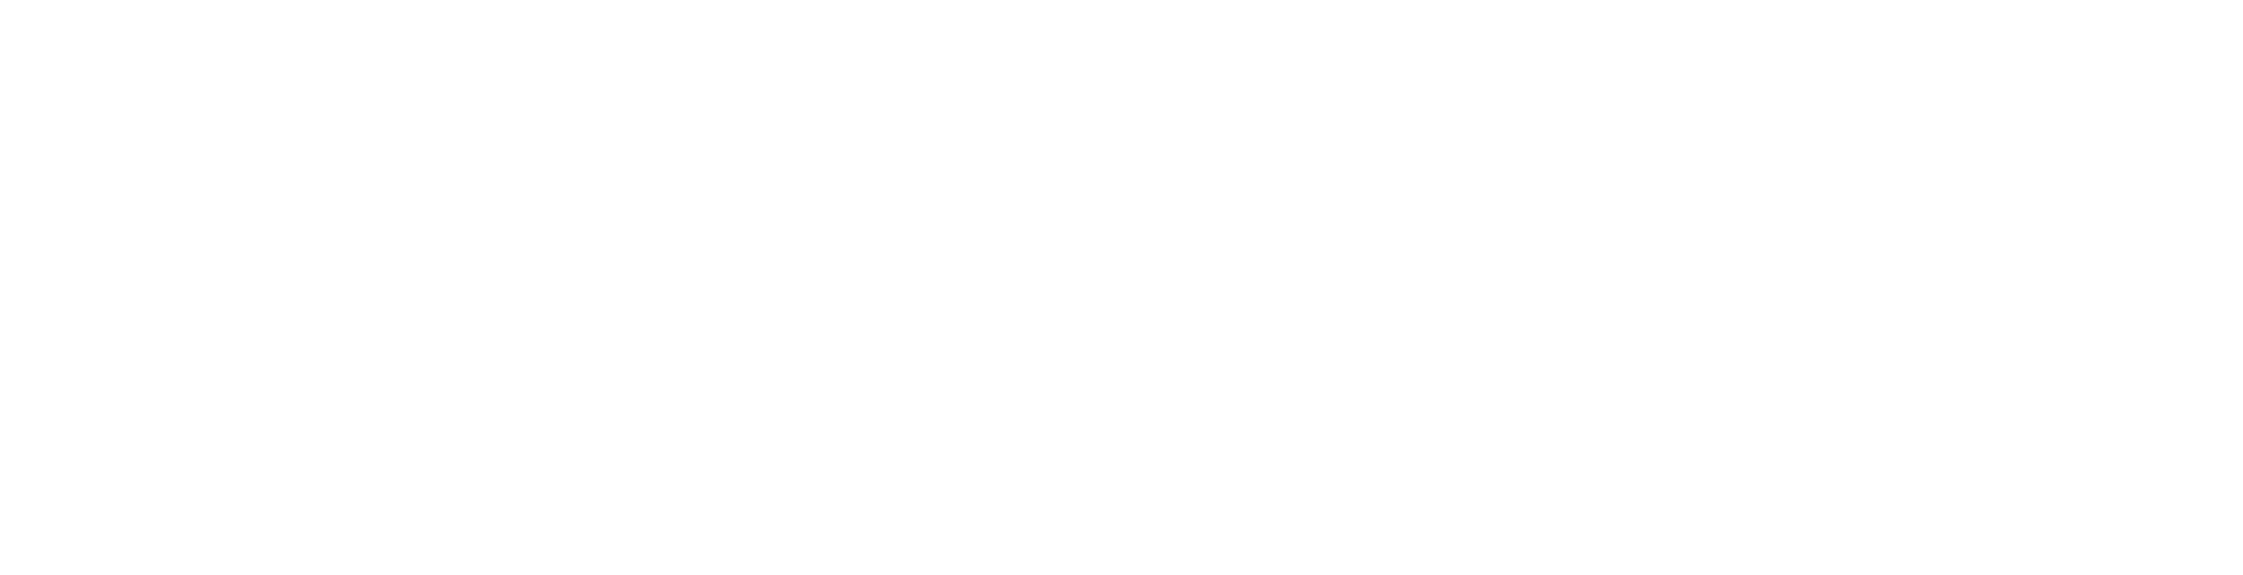 MHAAA: Mount Horeb Area Arts Association